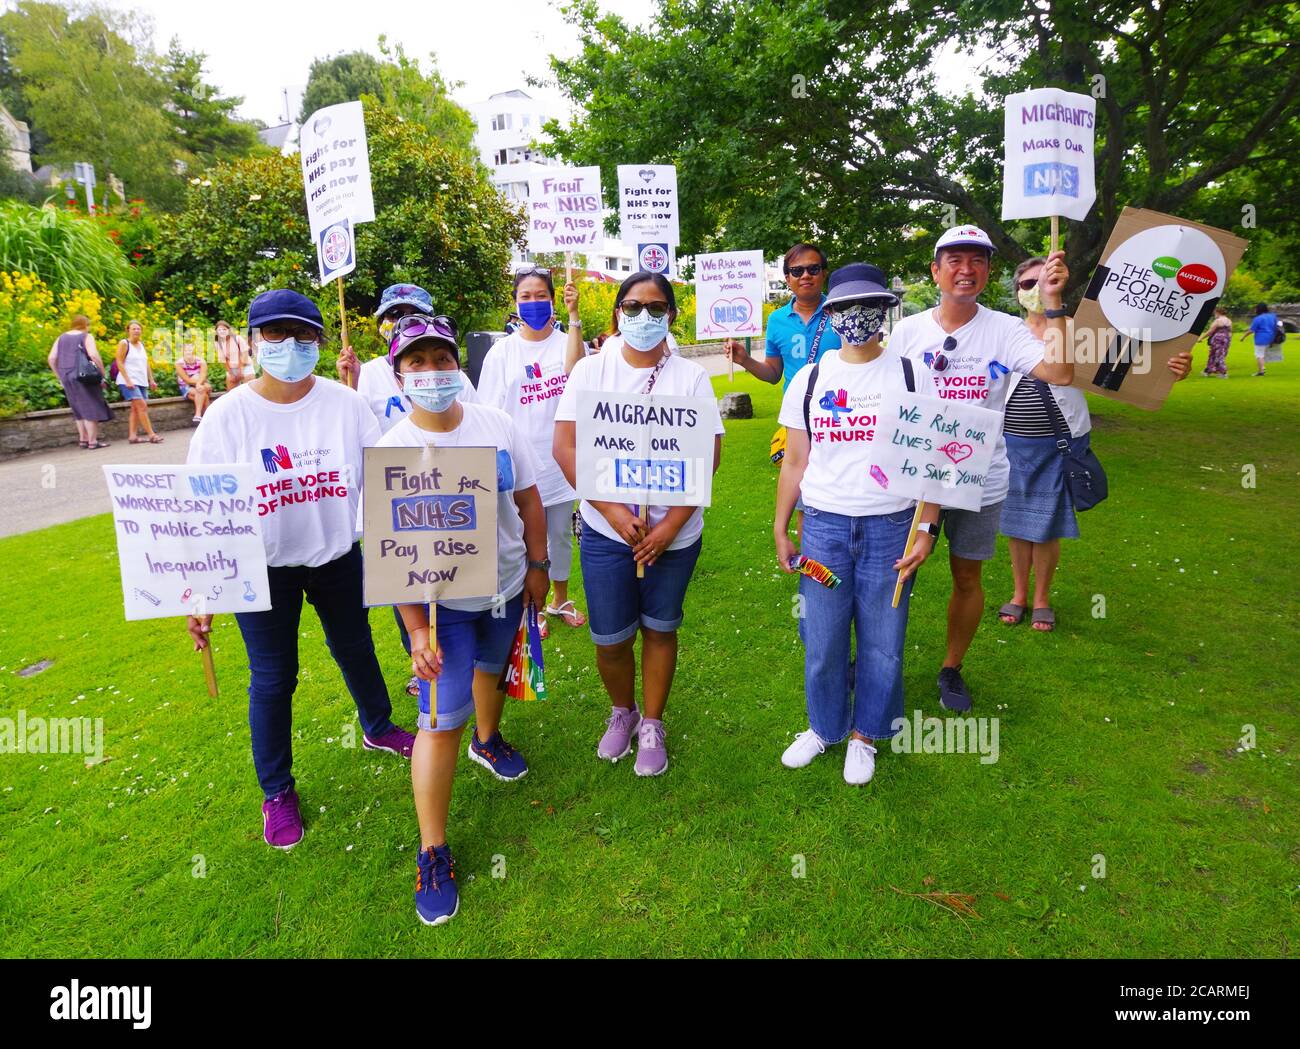 In tutto il paese i lavoratori del NHS hanno marciato per un aumento salariale. Sotto la bandiera di ' NHS lavoratori dire No ' infermieri ha chiesto un aumento pari al 15%. L'8 agosto 2020 ha visto azioni in tutto il Regno Unito. A Bournemouth la marcia per un aumento di retribuzione è stata seguita da un grande raduno. Marciando dalla piazza, si è svolto un percorso per Horse Shoe Common a Bournemouth Gardens. Gli infermieri del Regno Unito hanno organizzato queste manifestazioni in tutto il Regno Unito Foto Stock